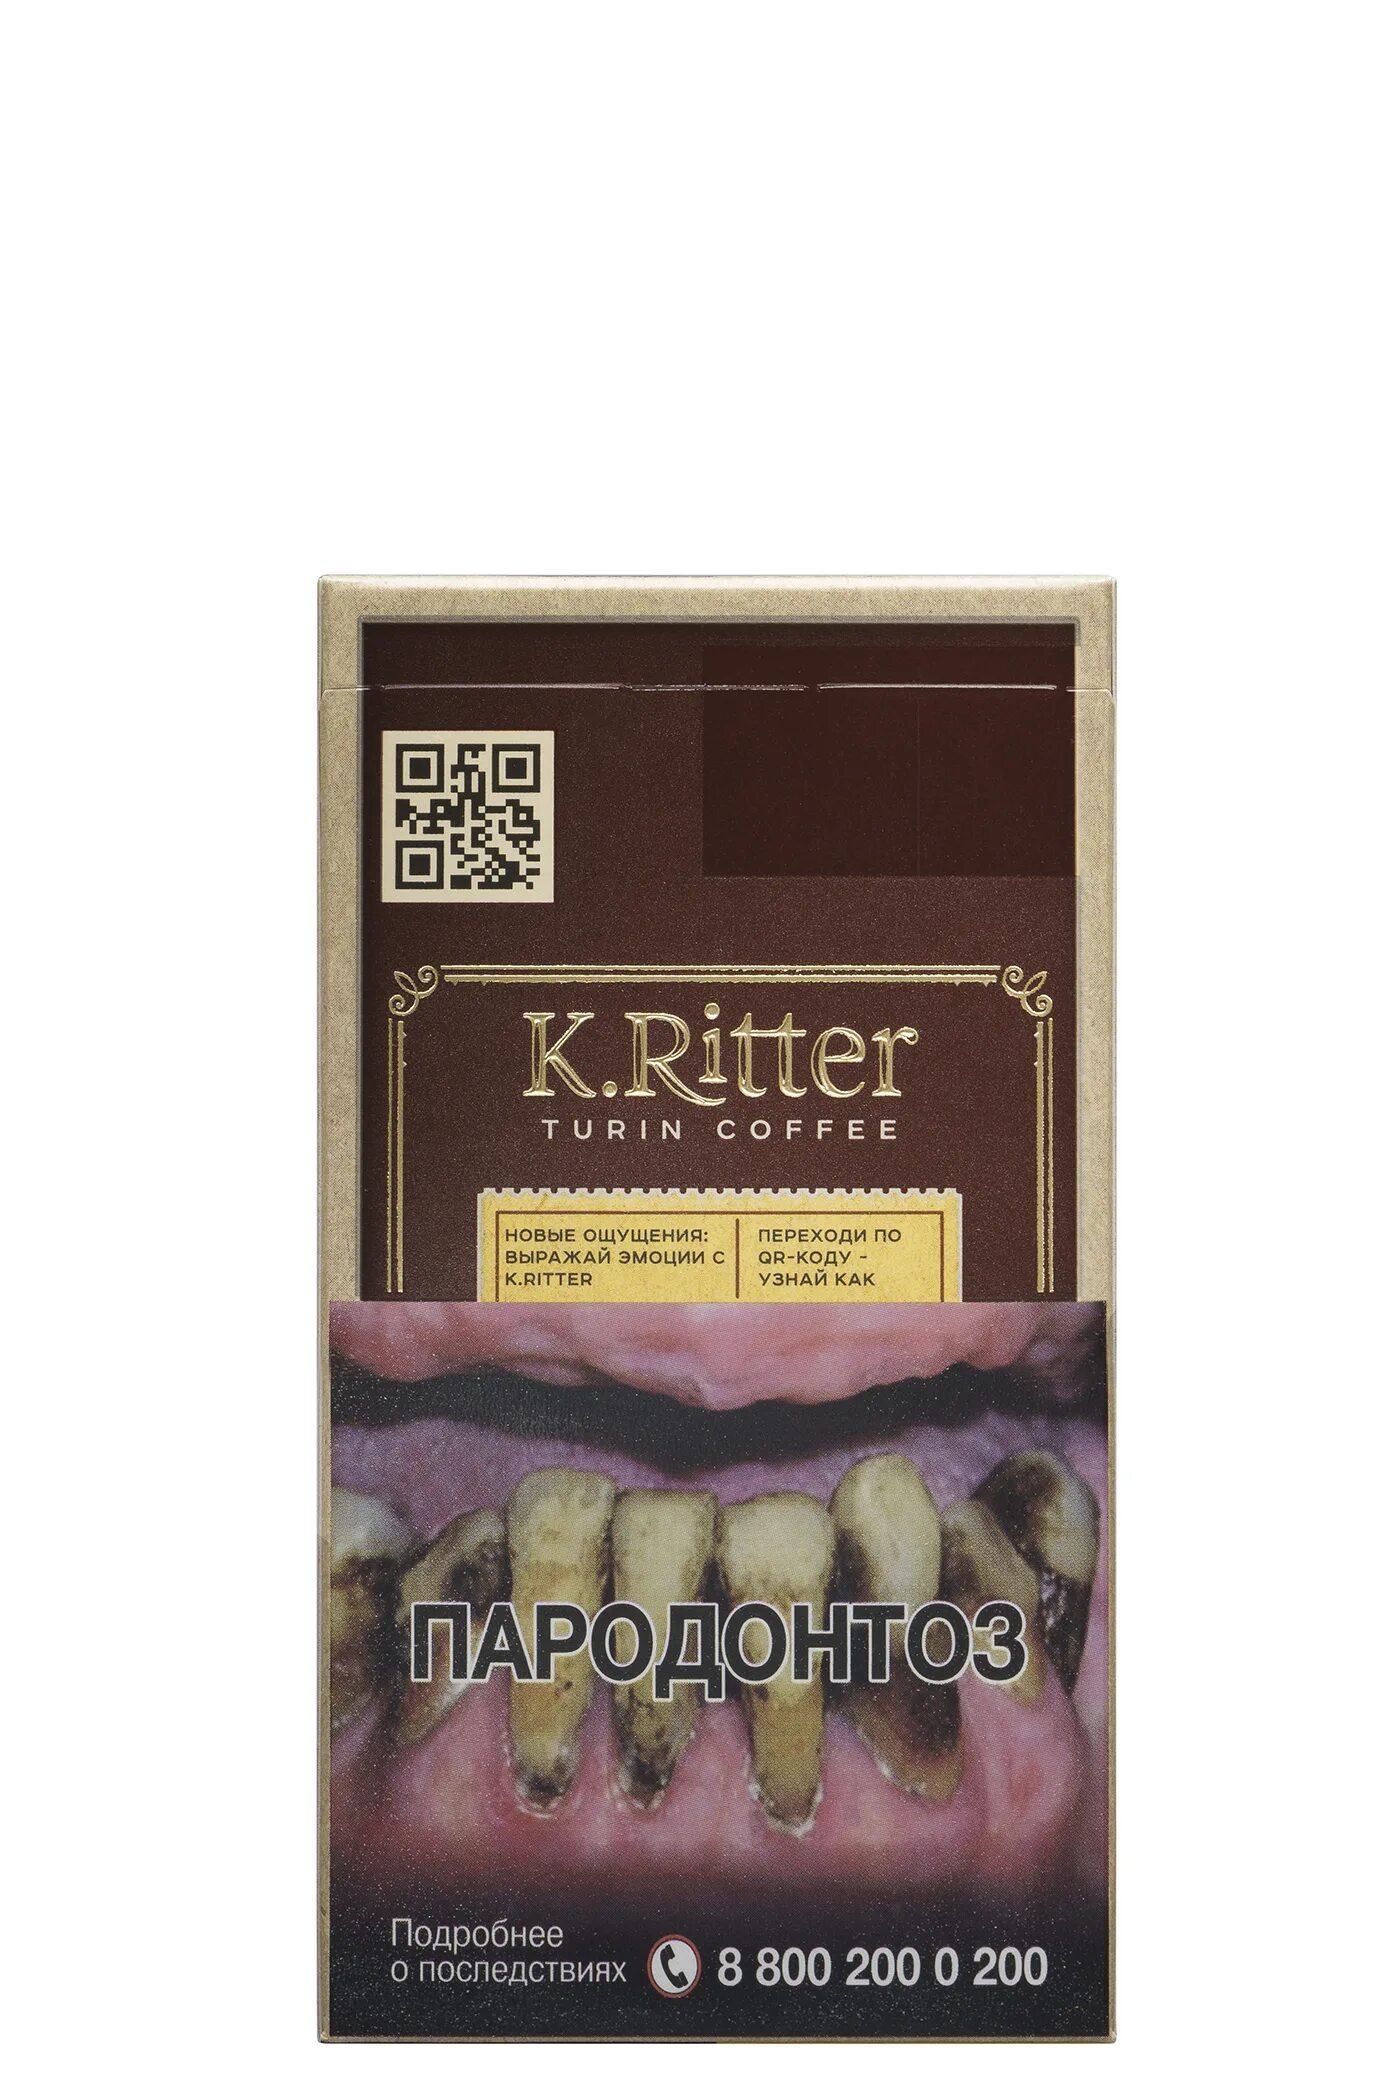 Сигареты k ritter купить. Сигареты k.Ritter с вишней. K Ritter сигареты. Сигареты k.Ritter компакт. K.Ritter кофе.